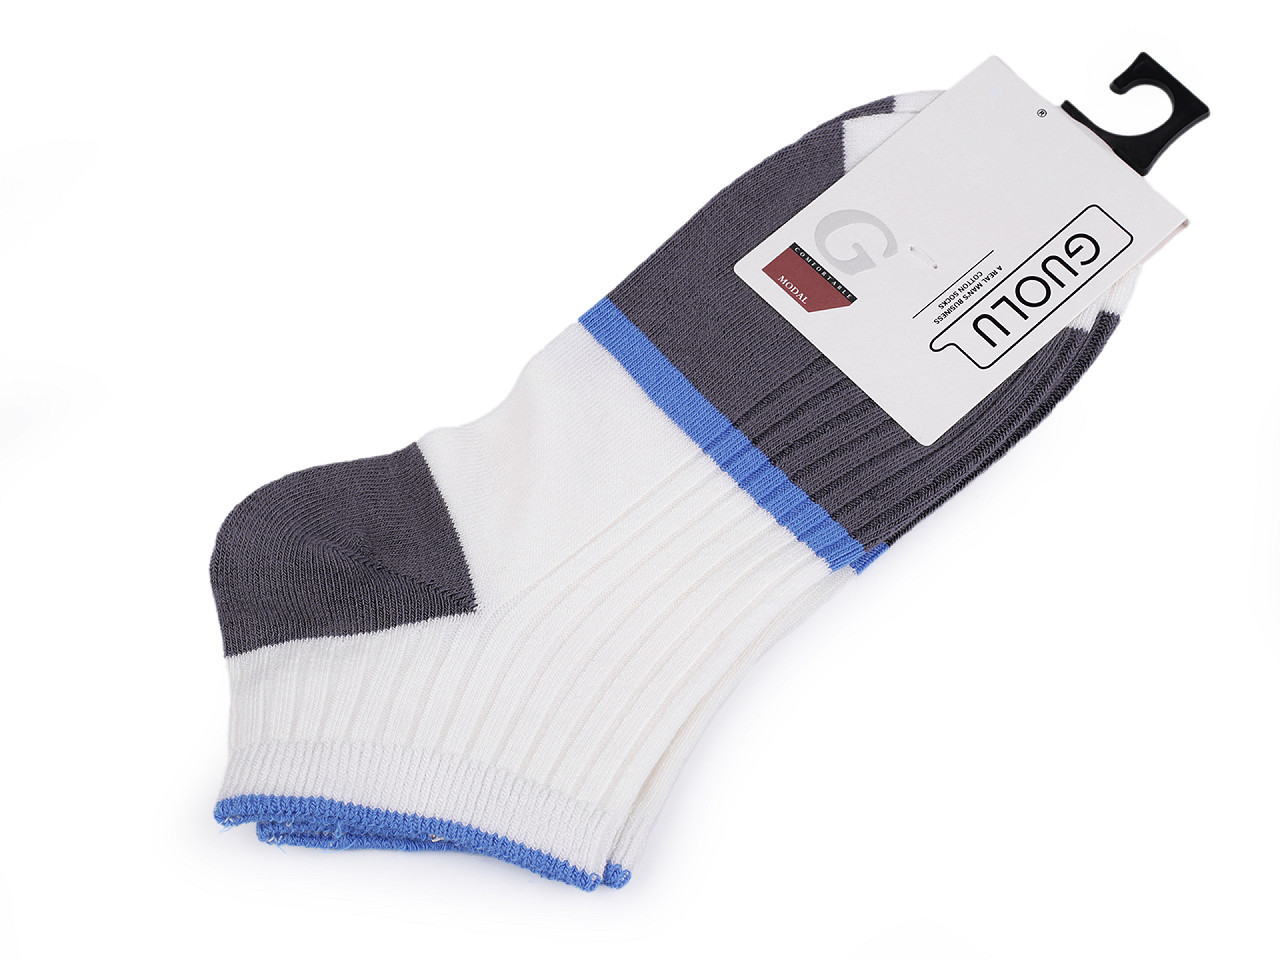 Pánské / chlapecké bavlněné ponožky kotníkové, barva 6 bílo-modrá šedá